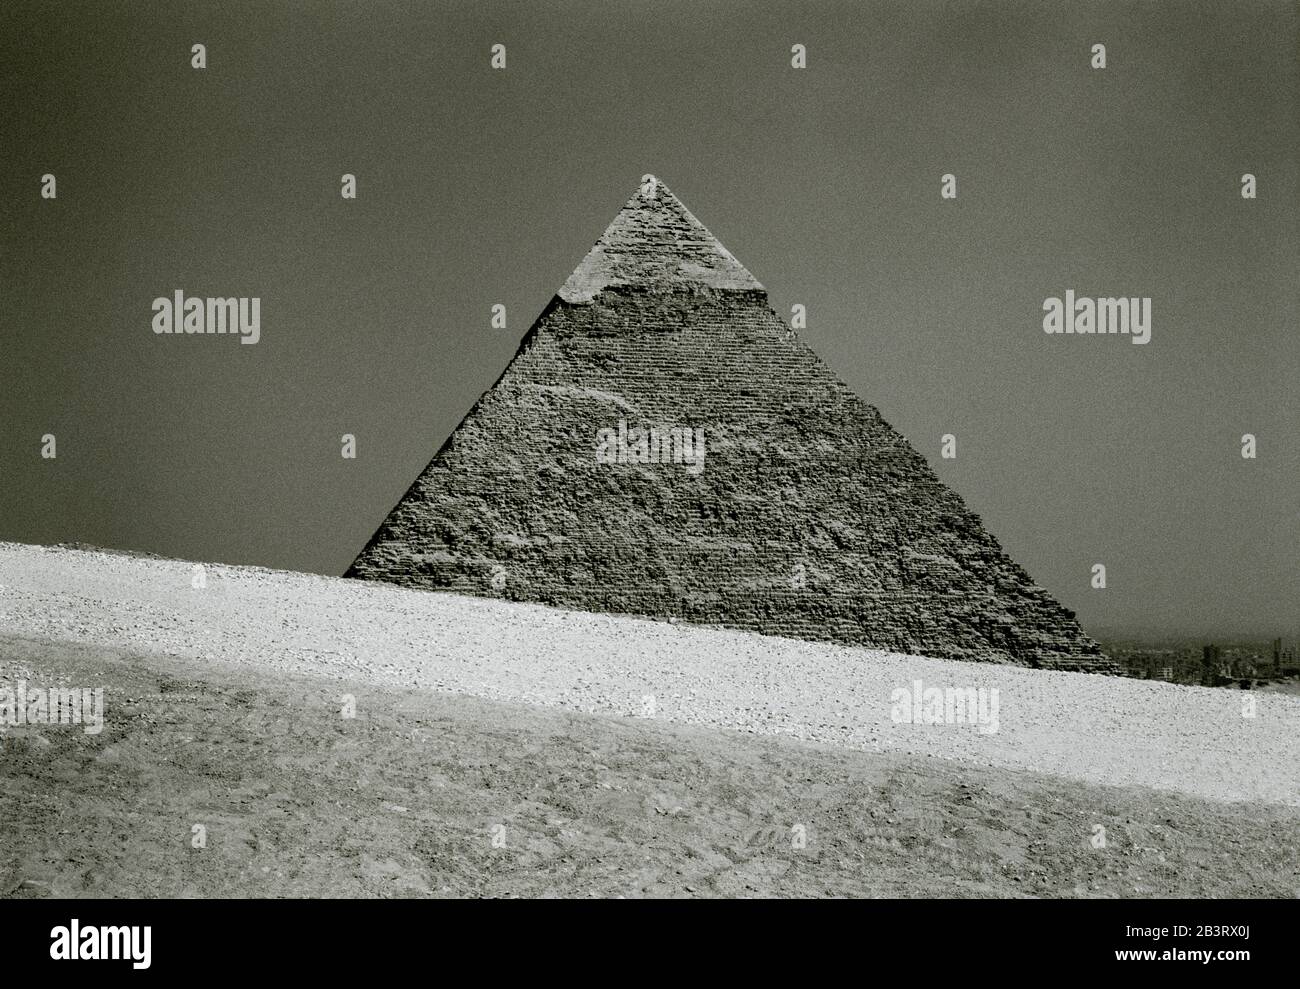 Photographie de voyage en noir et blanc - Pyramide de Khafre aux pyramides de Giza au Caire en Egypte en Afrique du Nord Moyen-Orient - Histoire ancienne Banque D'Images